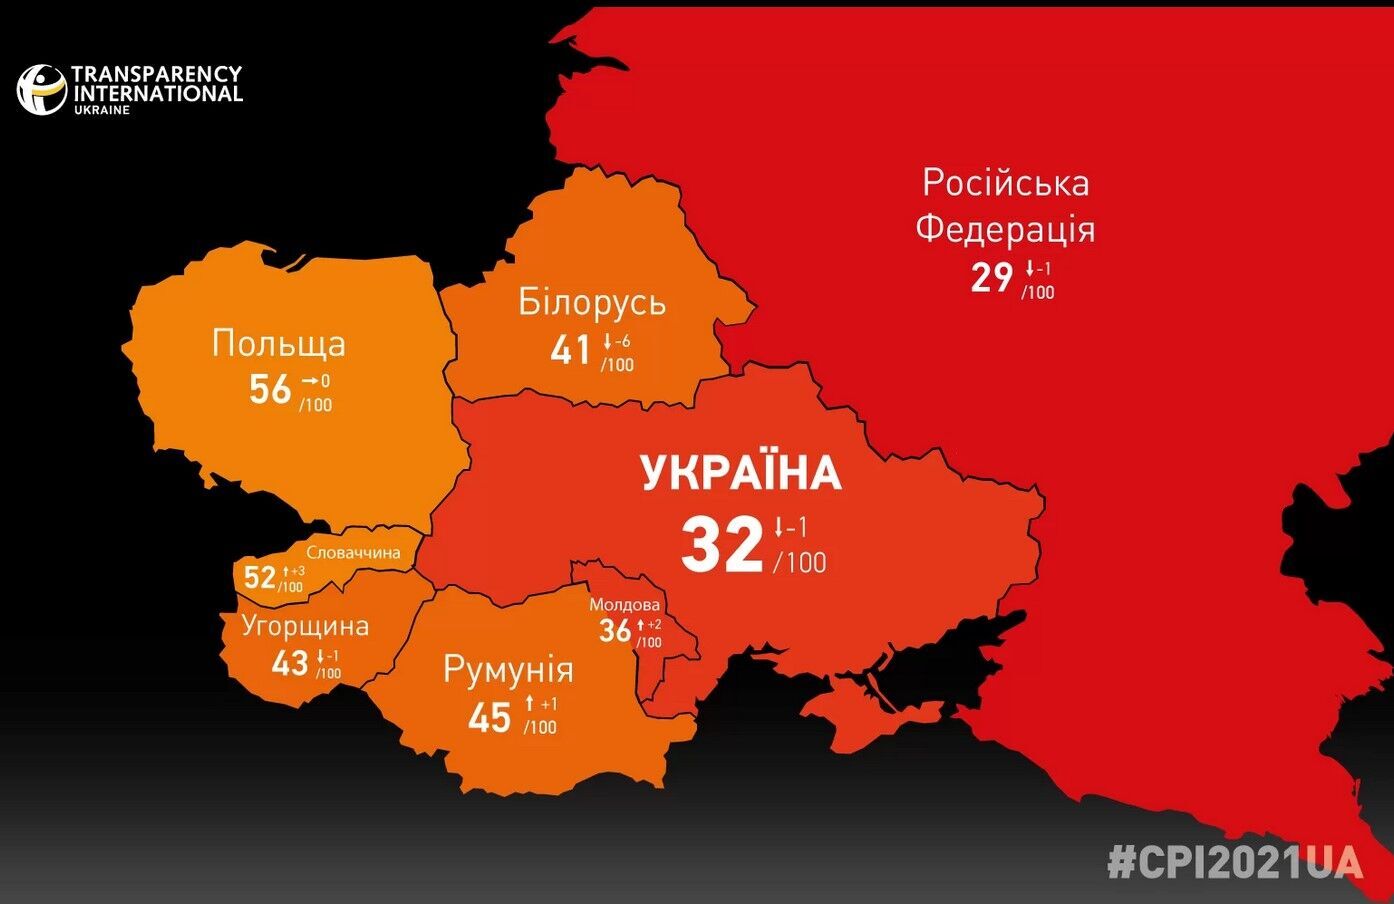 Україна має найгірші показники сприйняття корупції, ніж майже всі країни-сусіди